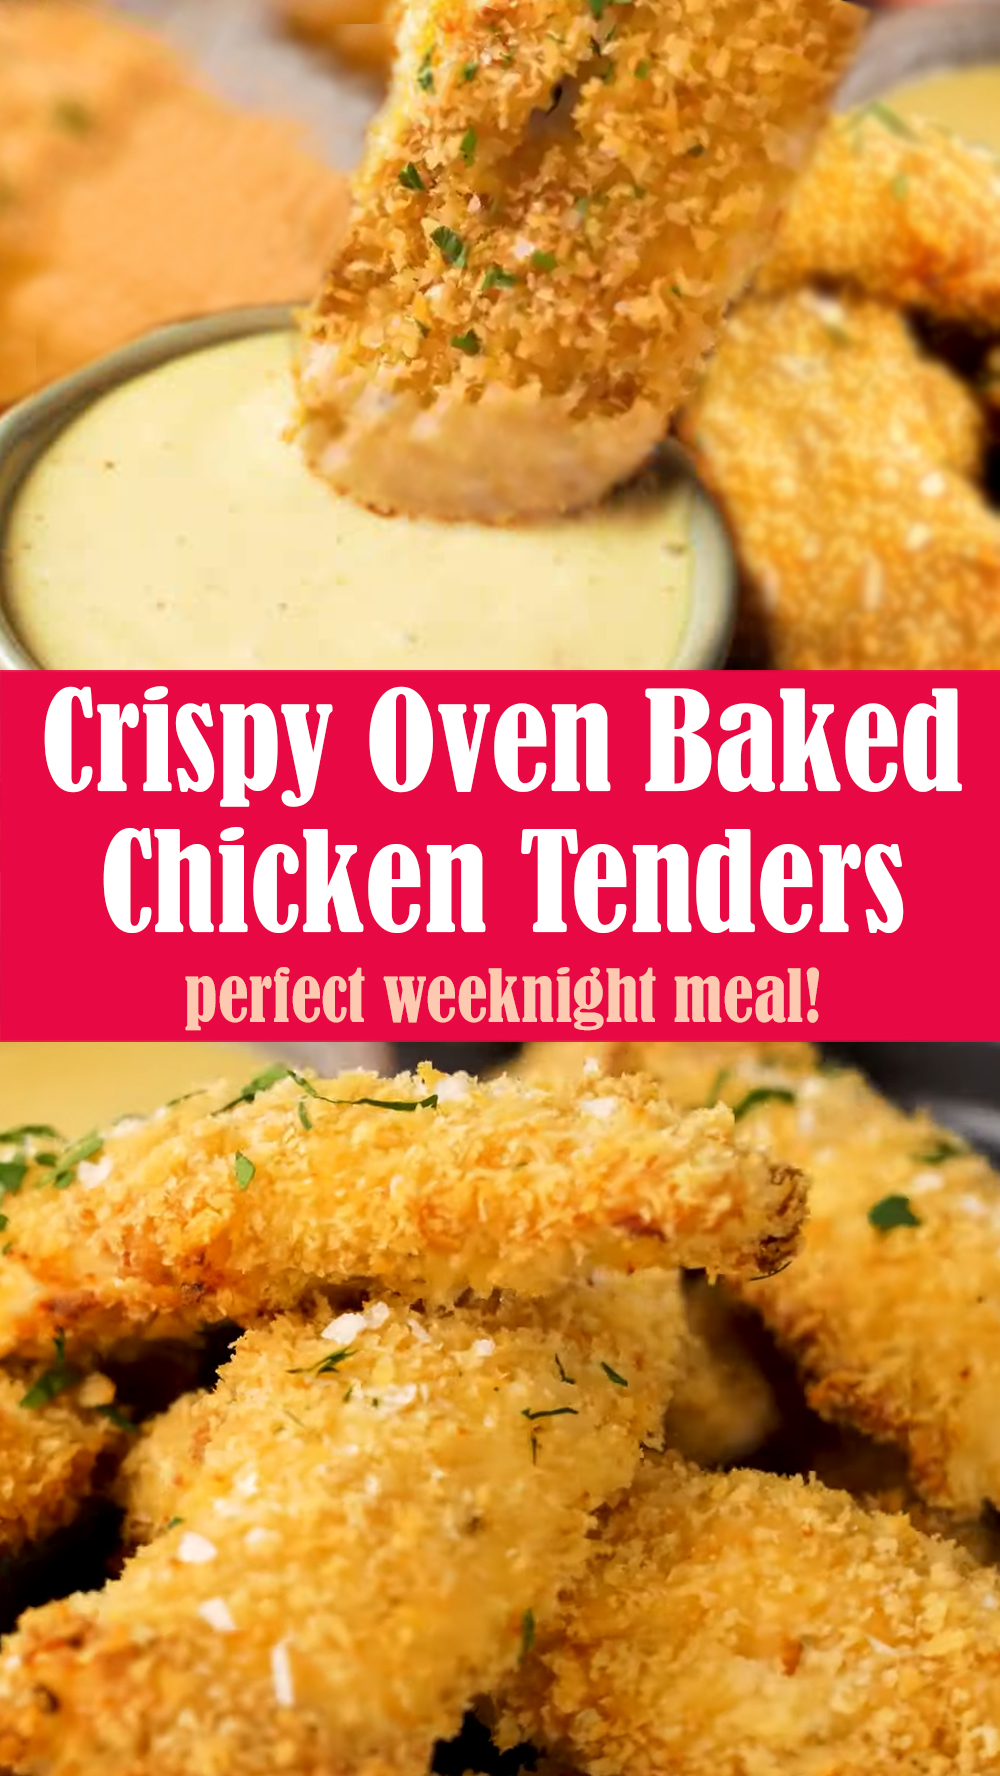 Crispy Oven Baked Chicken Tenders